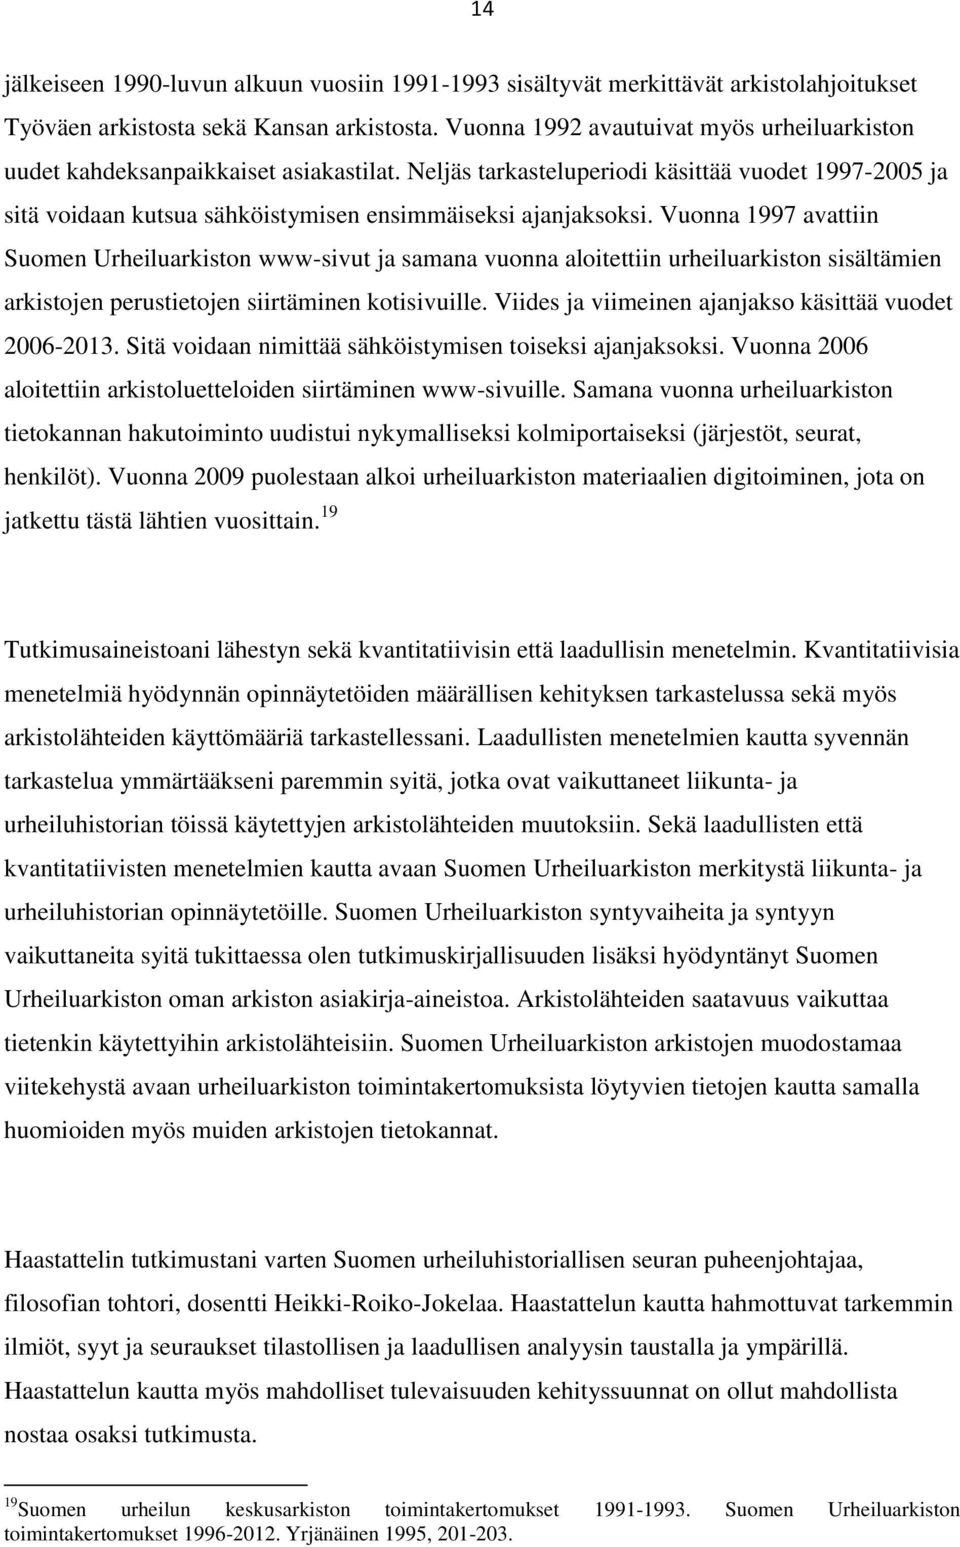 Vuonna 1997 avattiin Suomen Urheiluarkiston www-sivut ja samana vuonna aloitettiin urheiluarkiston sisältämien arkistojen perustietojen siirtäminen kotisivuille.